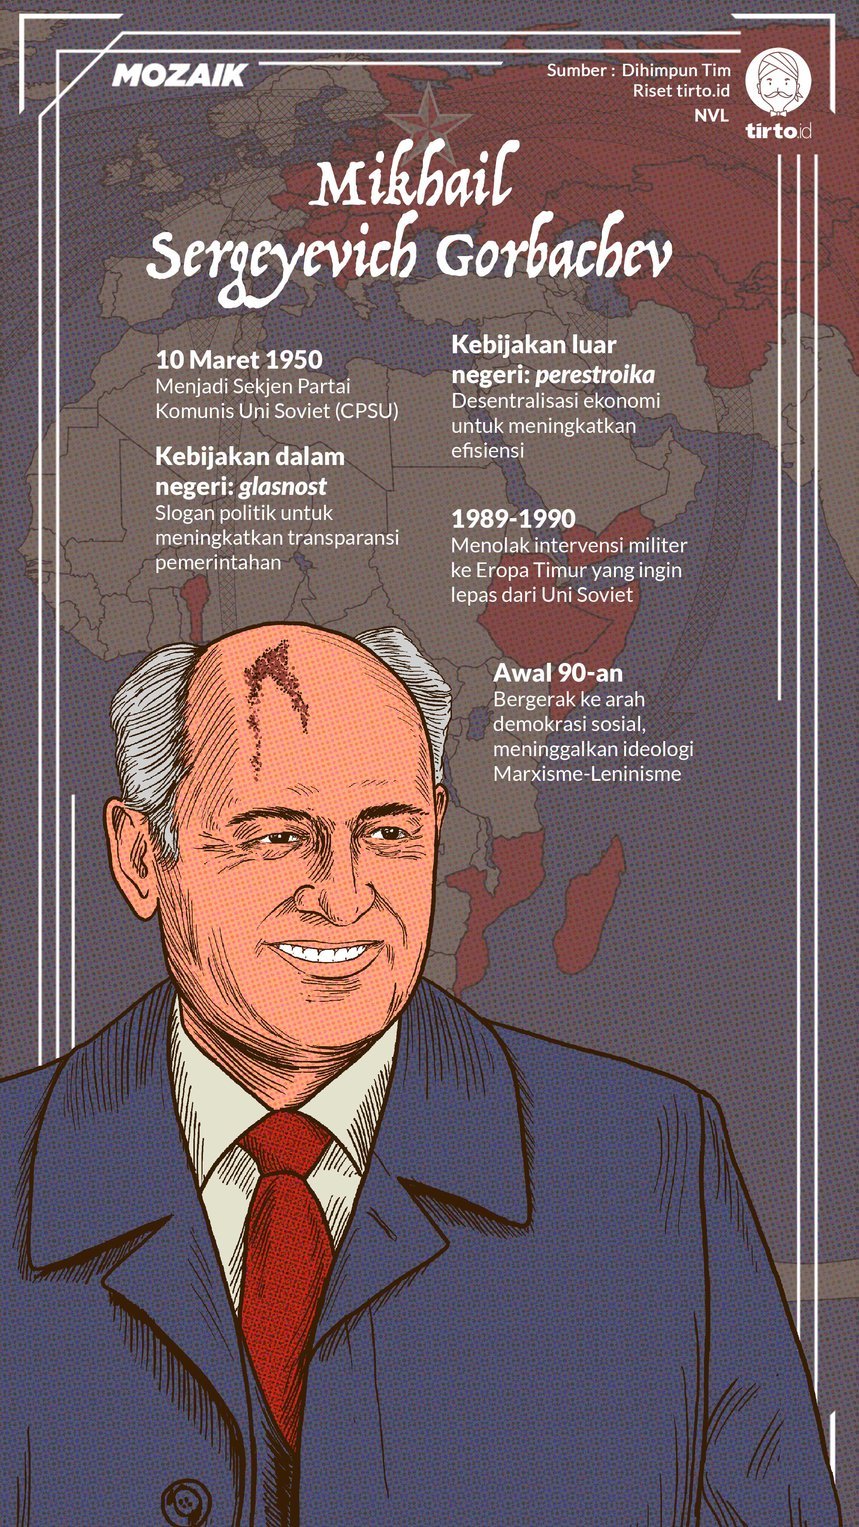 Infografik Mozaik Mikhail Gorbachev